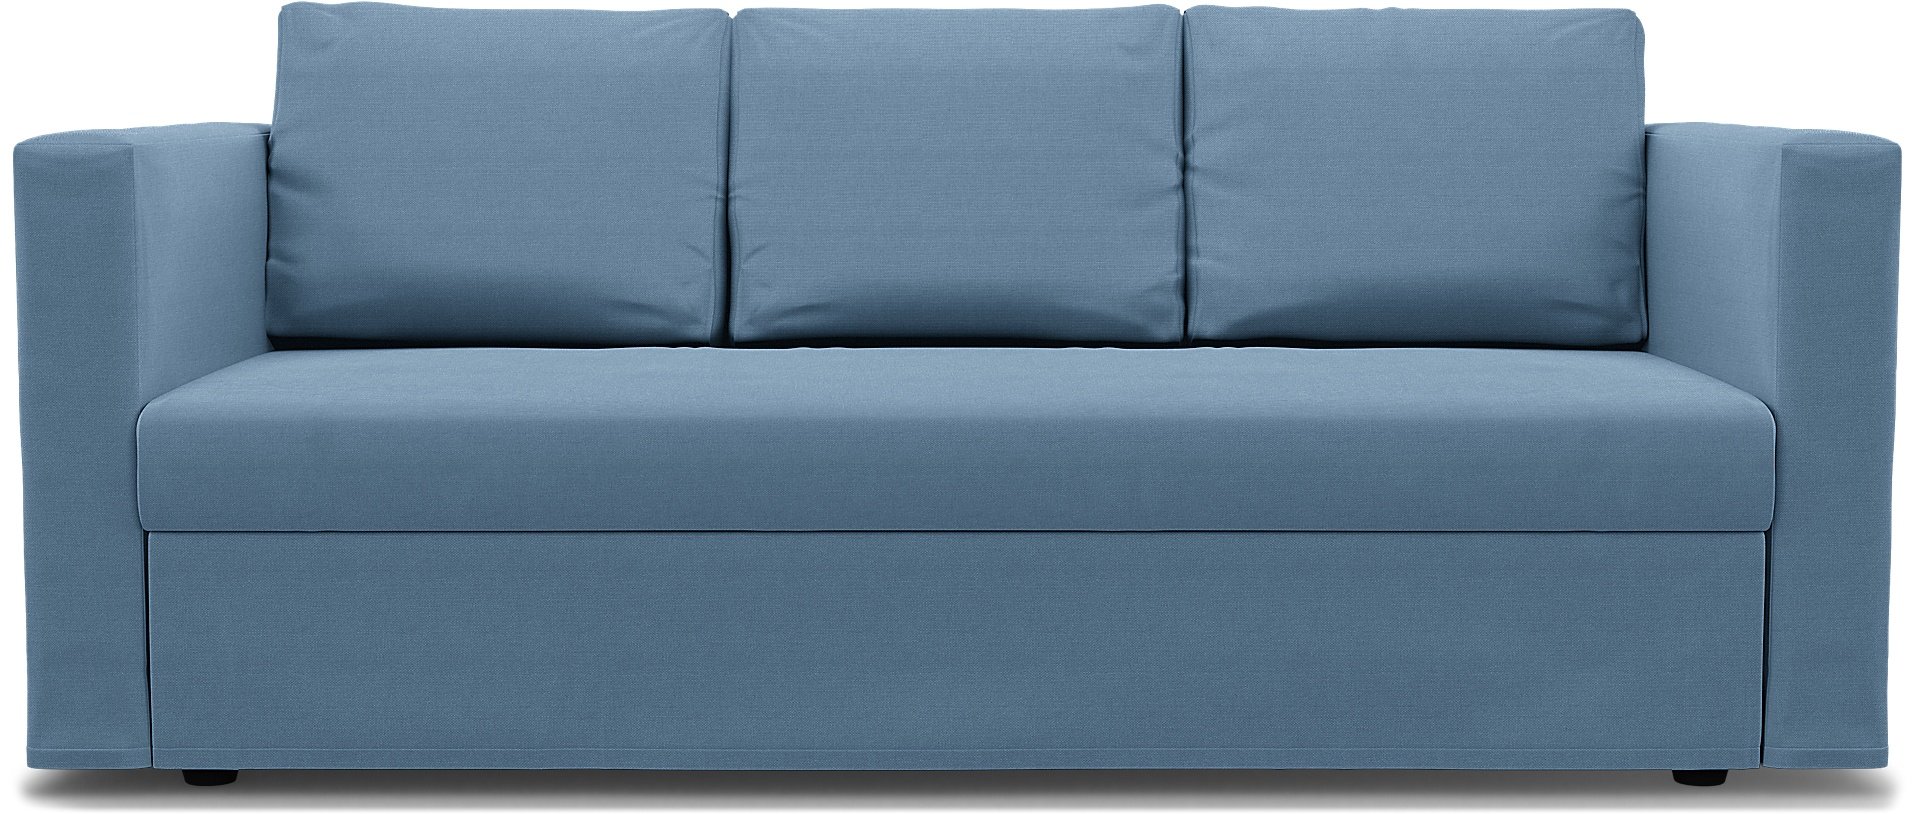 IKEA - Friheten 3 Seater Sofa Bed Cover, Vintage Blue, Linen - Bemz